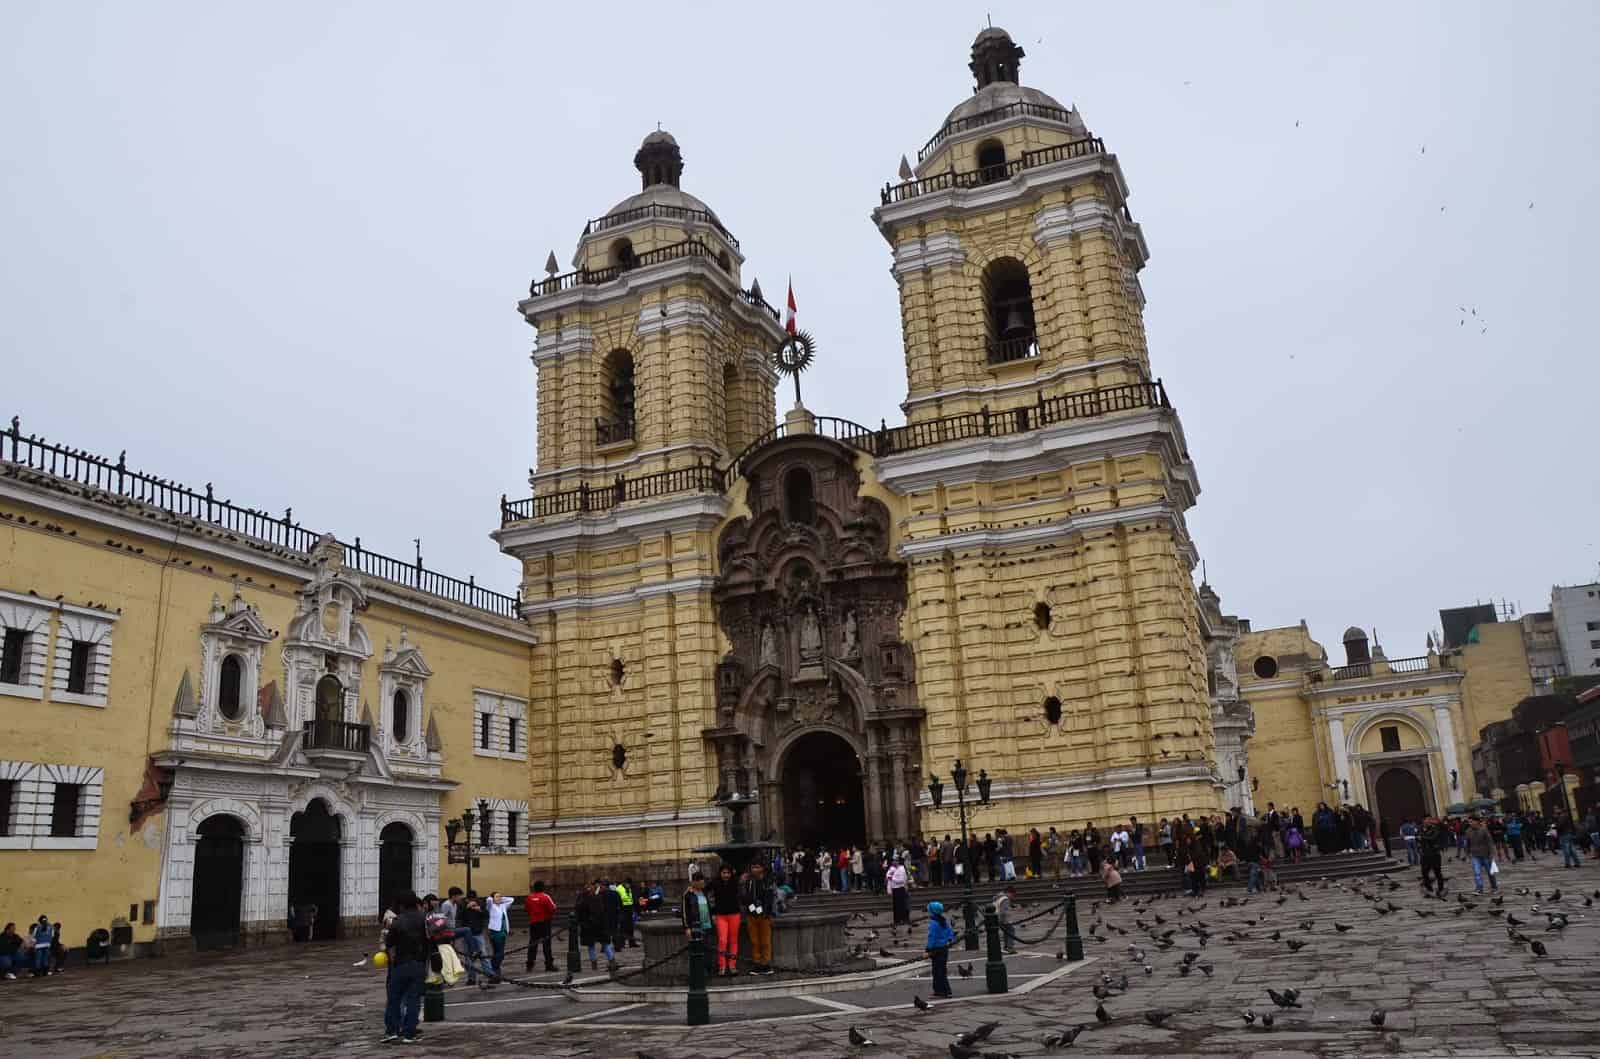 Convento de San Francisco in Lima, Peru